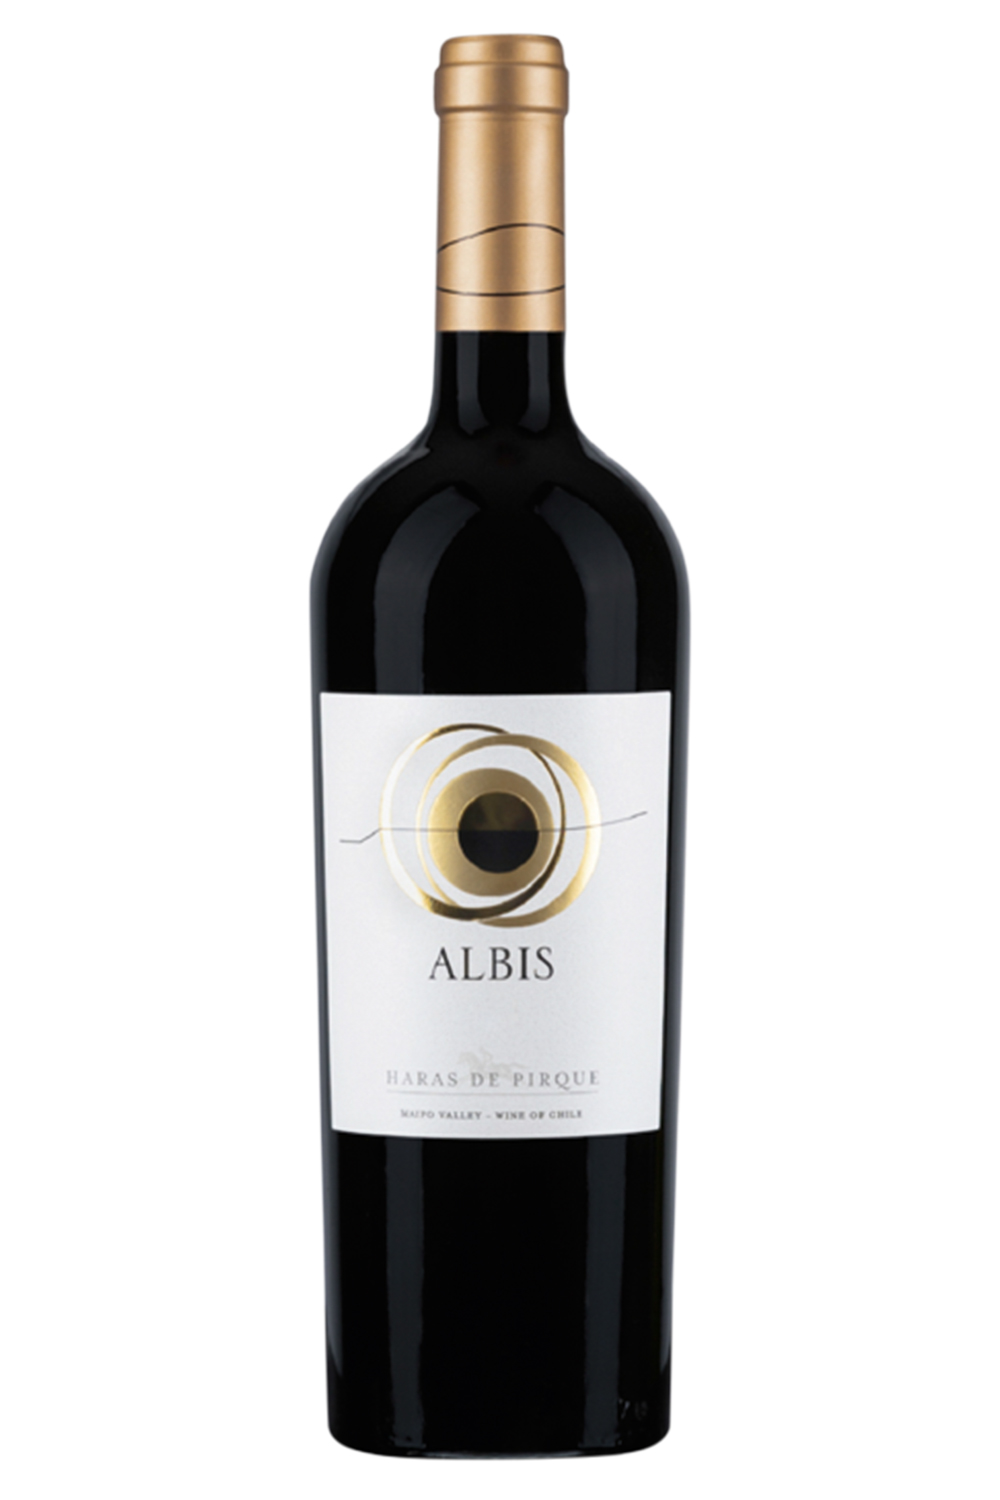 ALBIS - Produzido no Chile pela Haras de Pirque, é uma das iniciativas da Antinori, da Toscana, em regiões fora da Itália